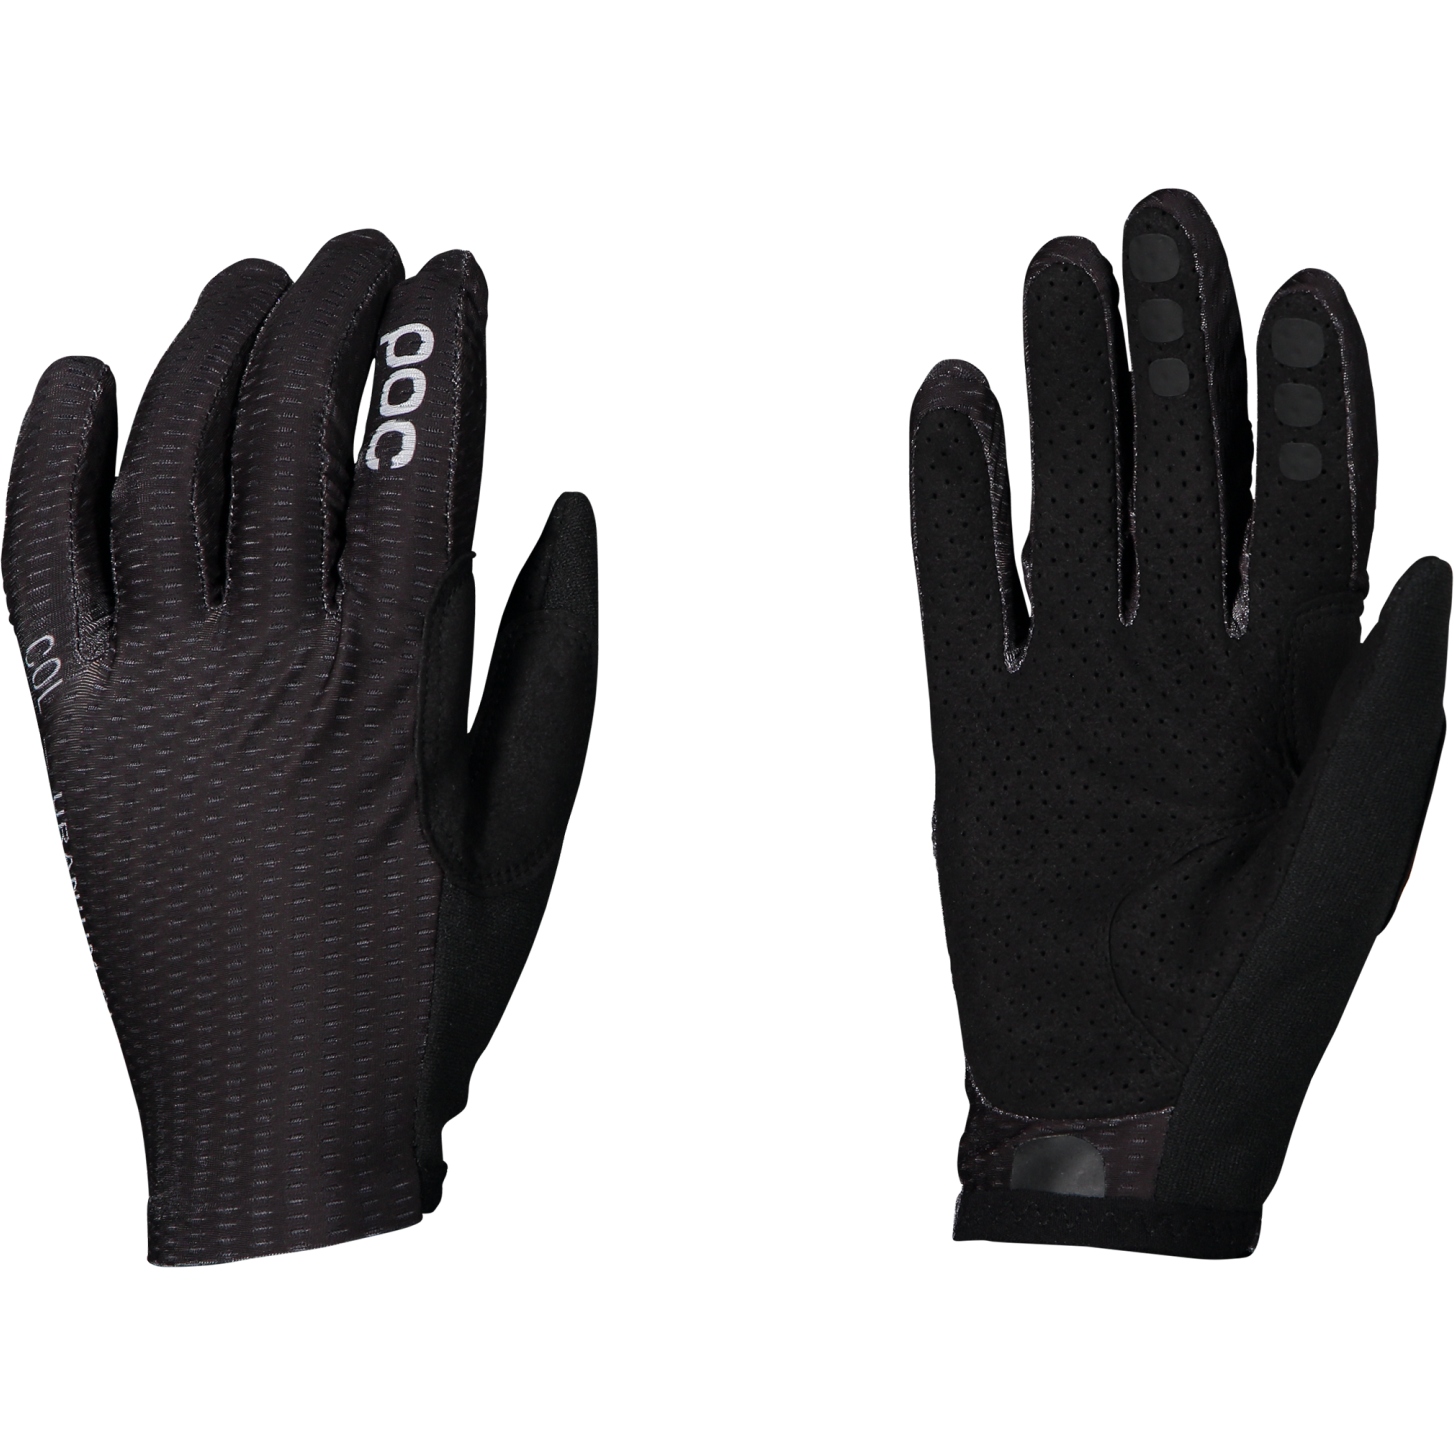 Picture of POC Savant MTB Gloves - 1002 Uranium Black